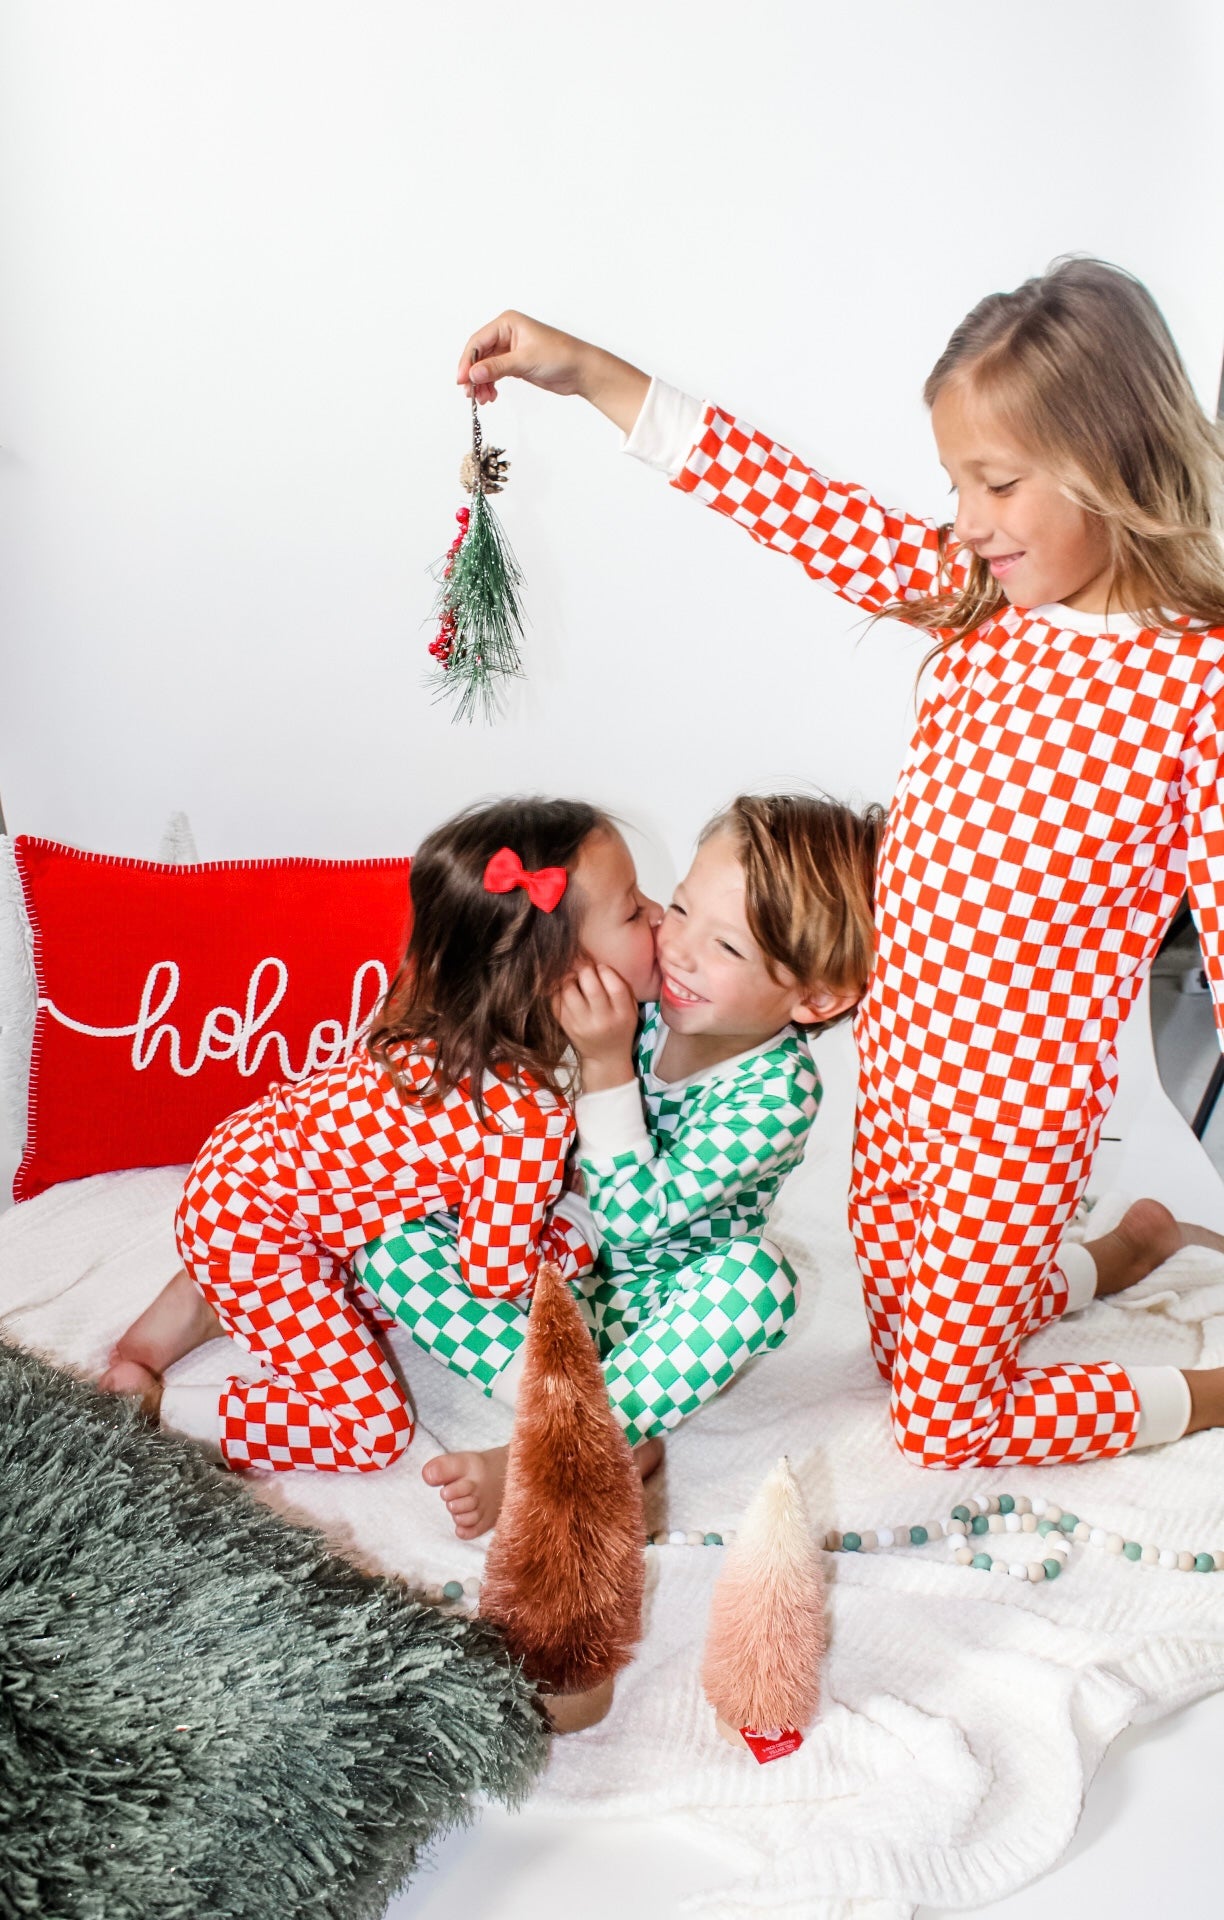 Checker Christmas Pajamas | two piece set